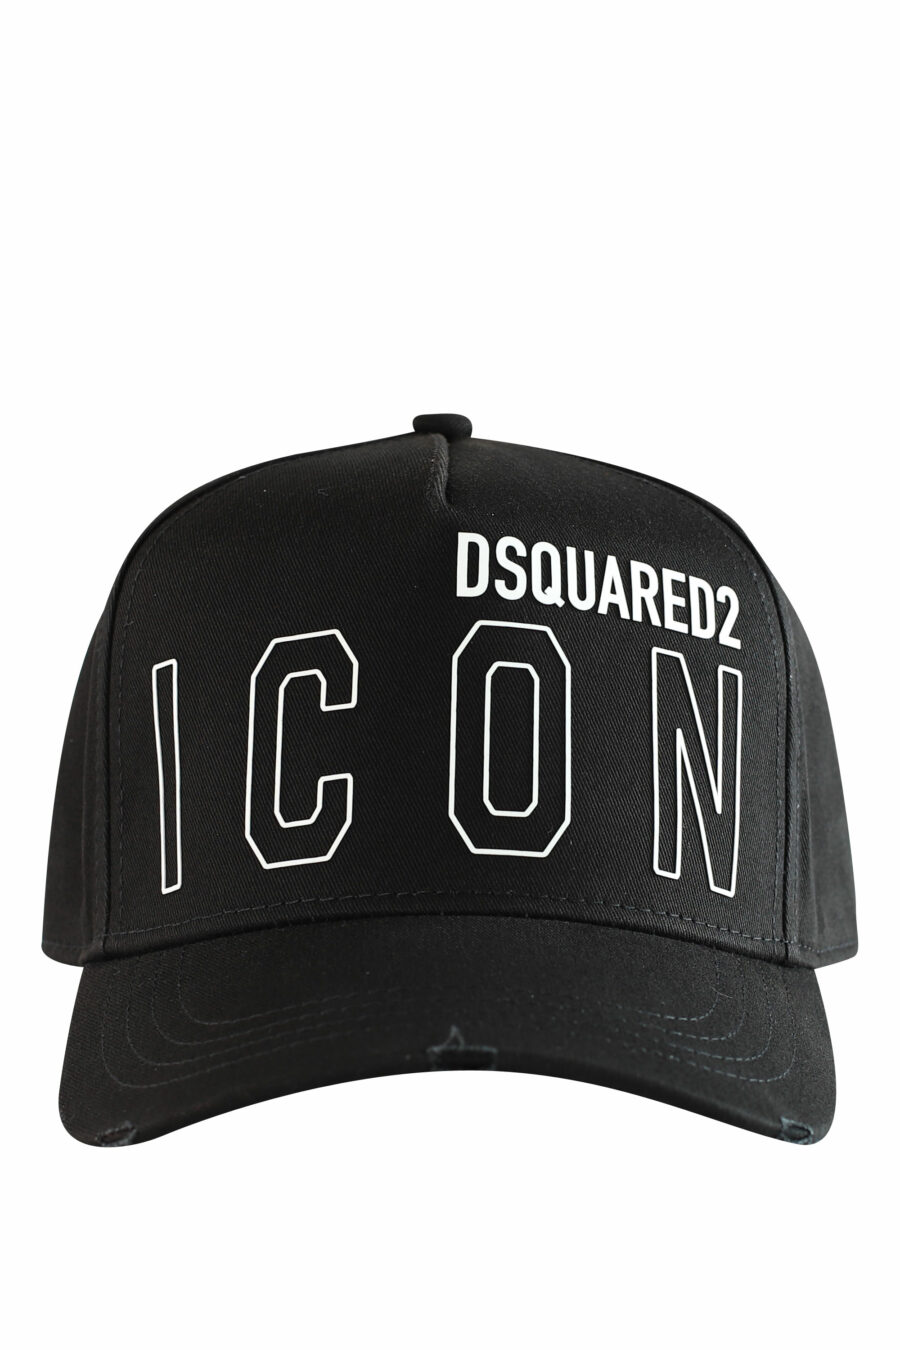 Gorra negra con doble logo en contorno "icon" - IMG 1224